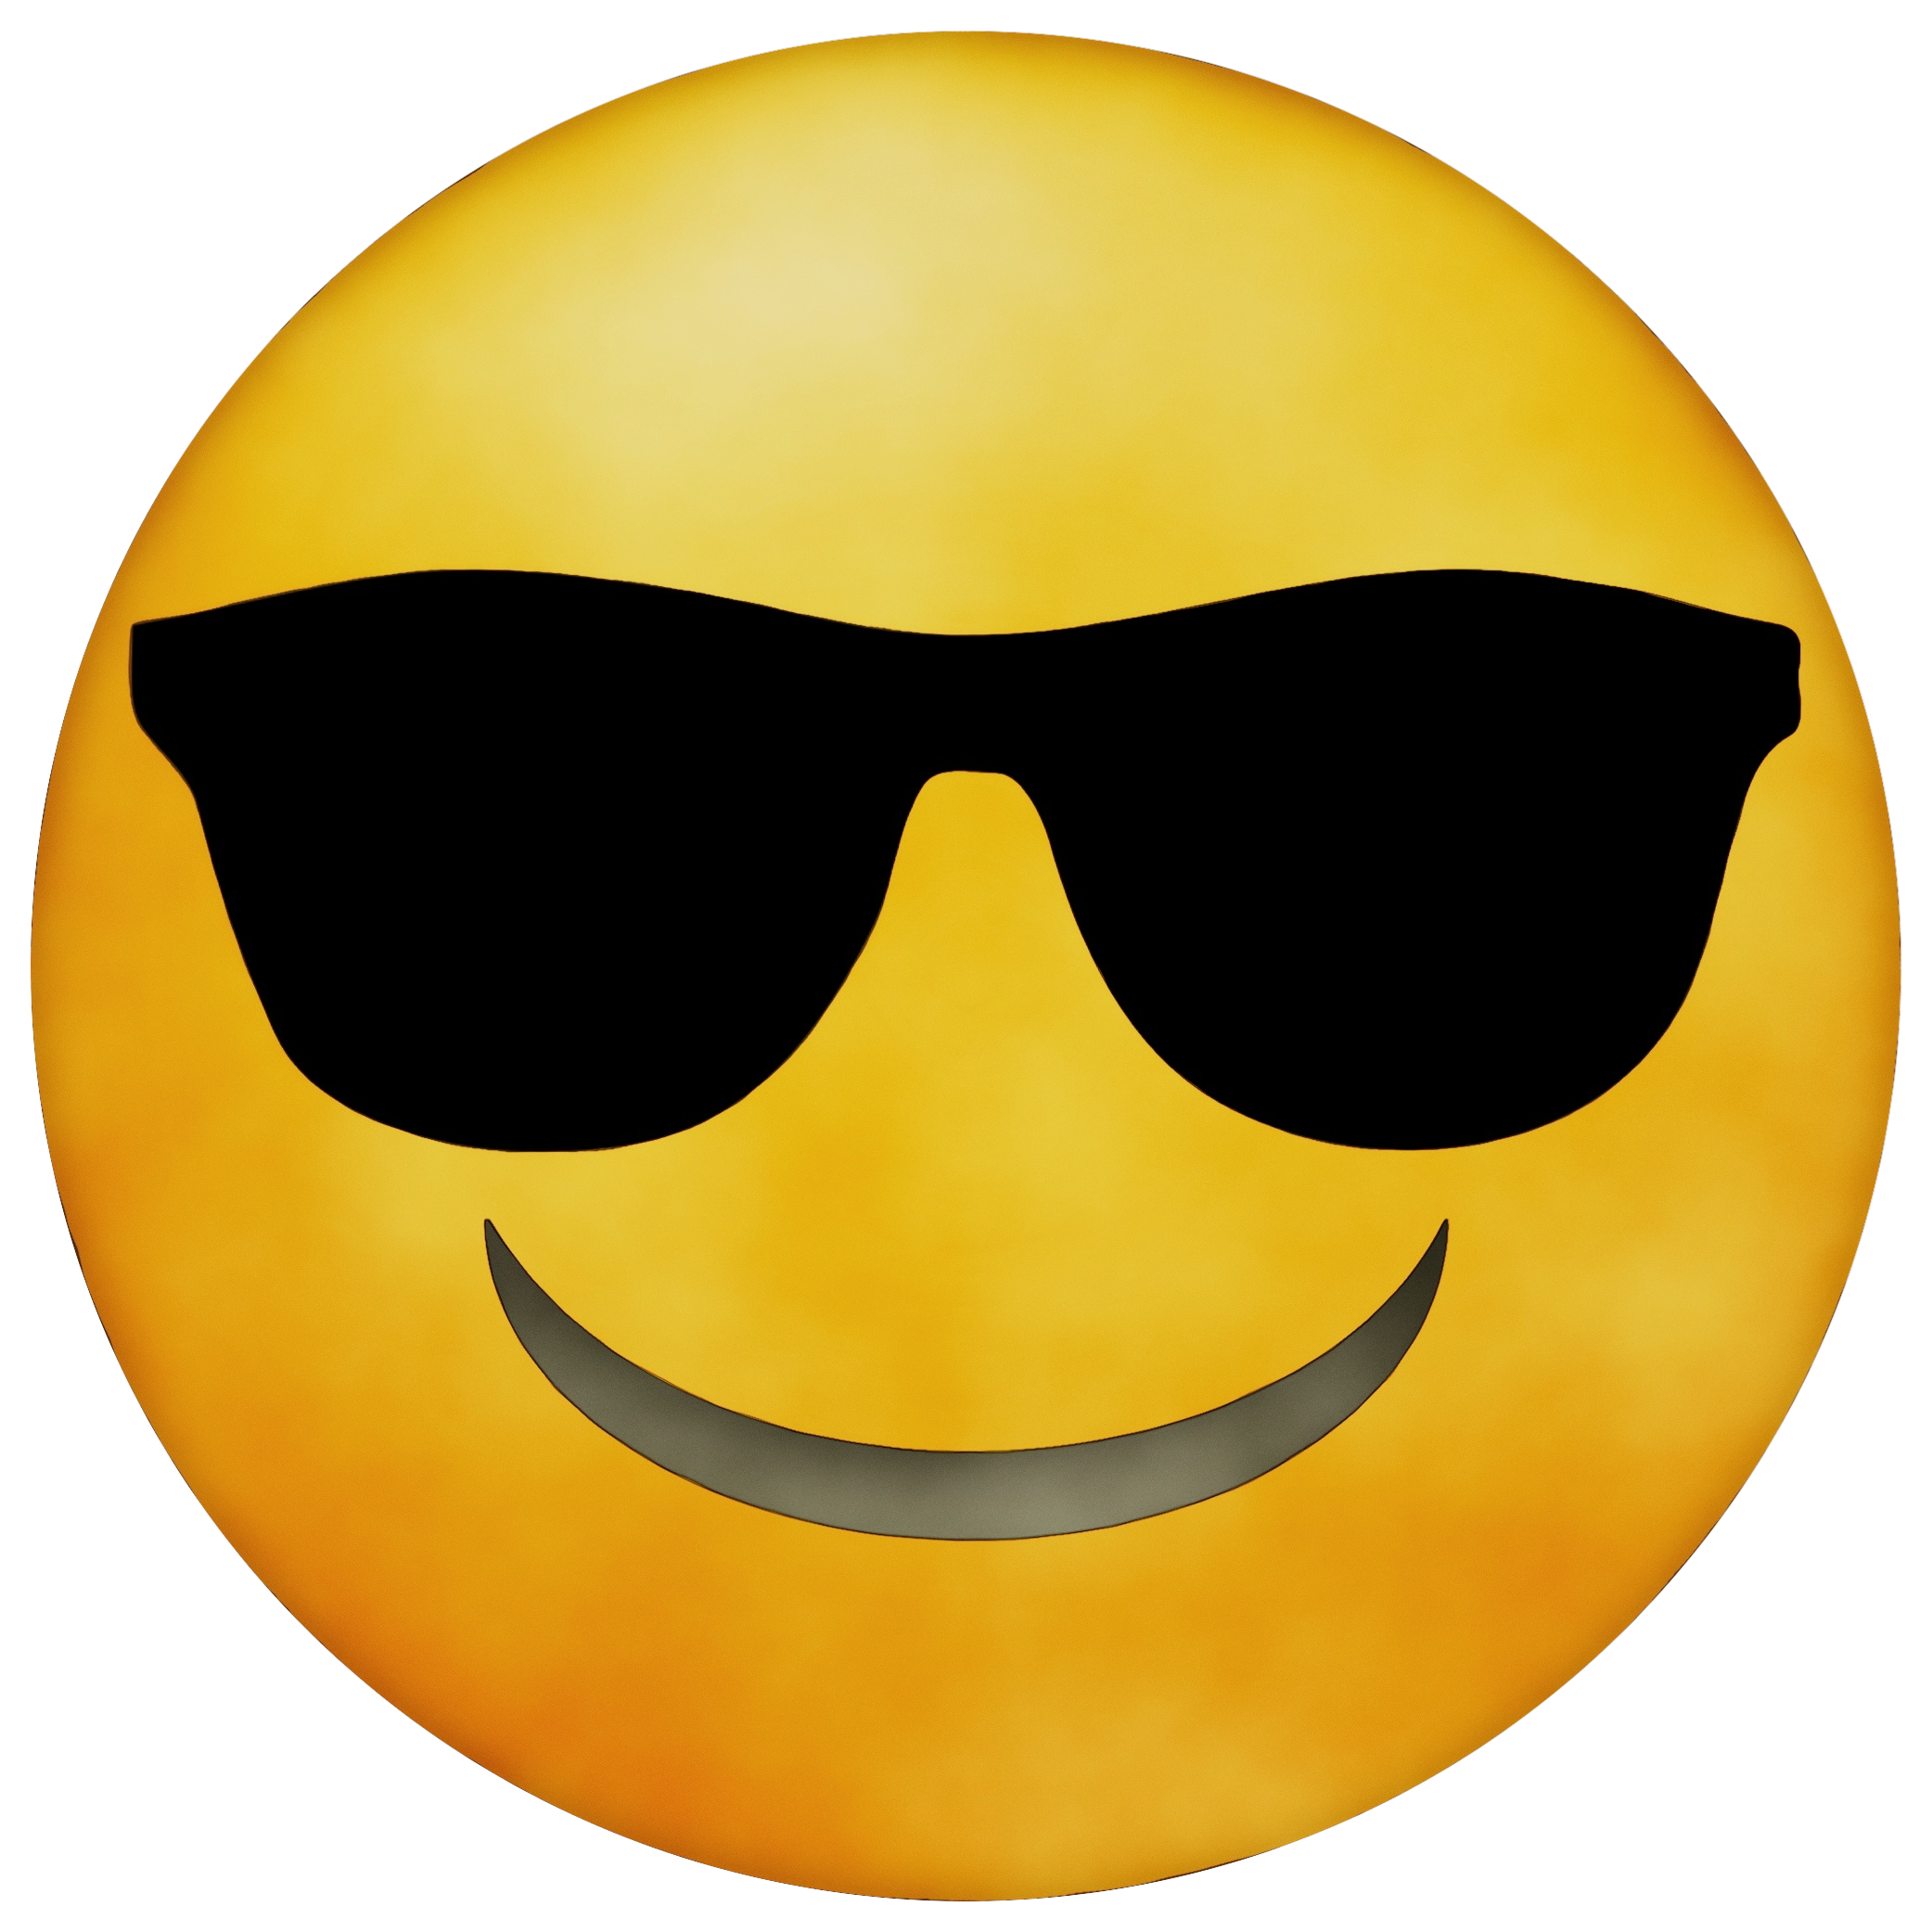 Emoji Smiley Clip art Emoticon Face - png download - 2083*2083 - Free ...